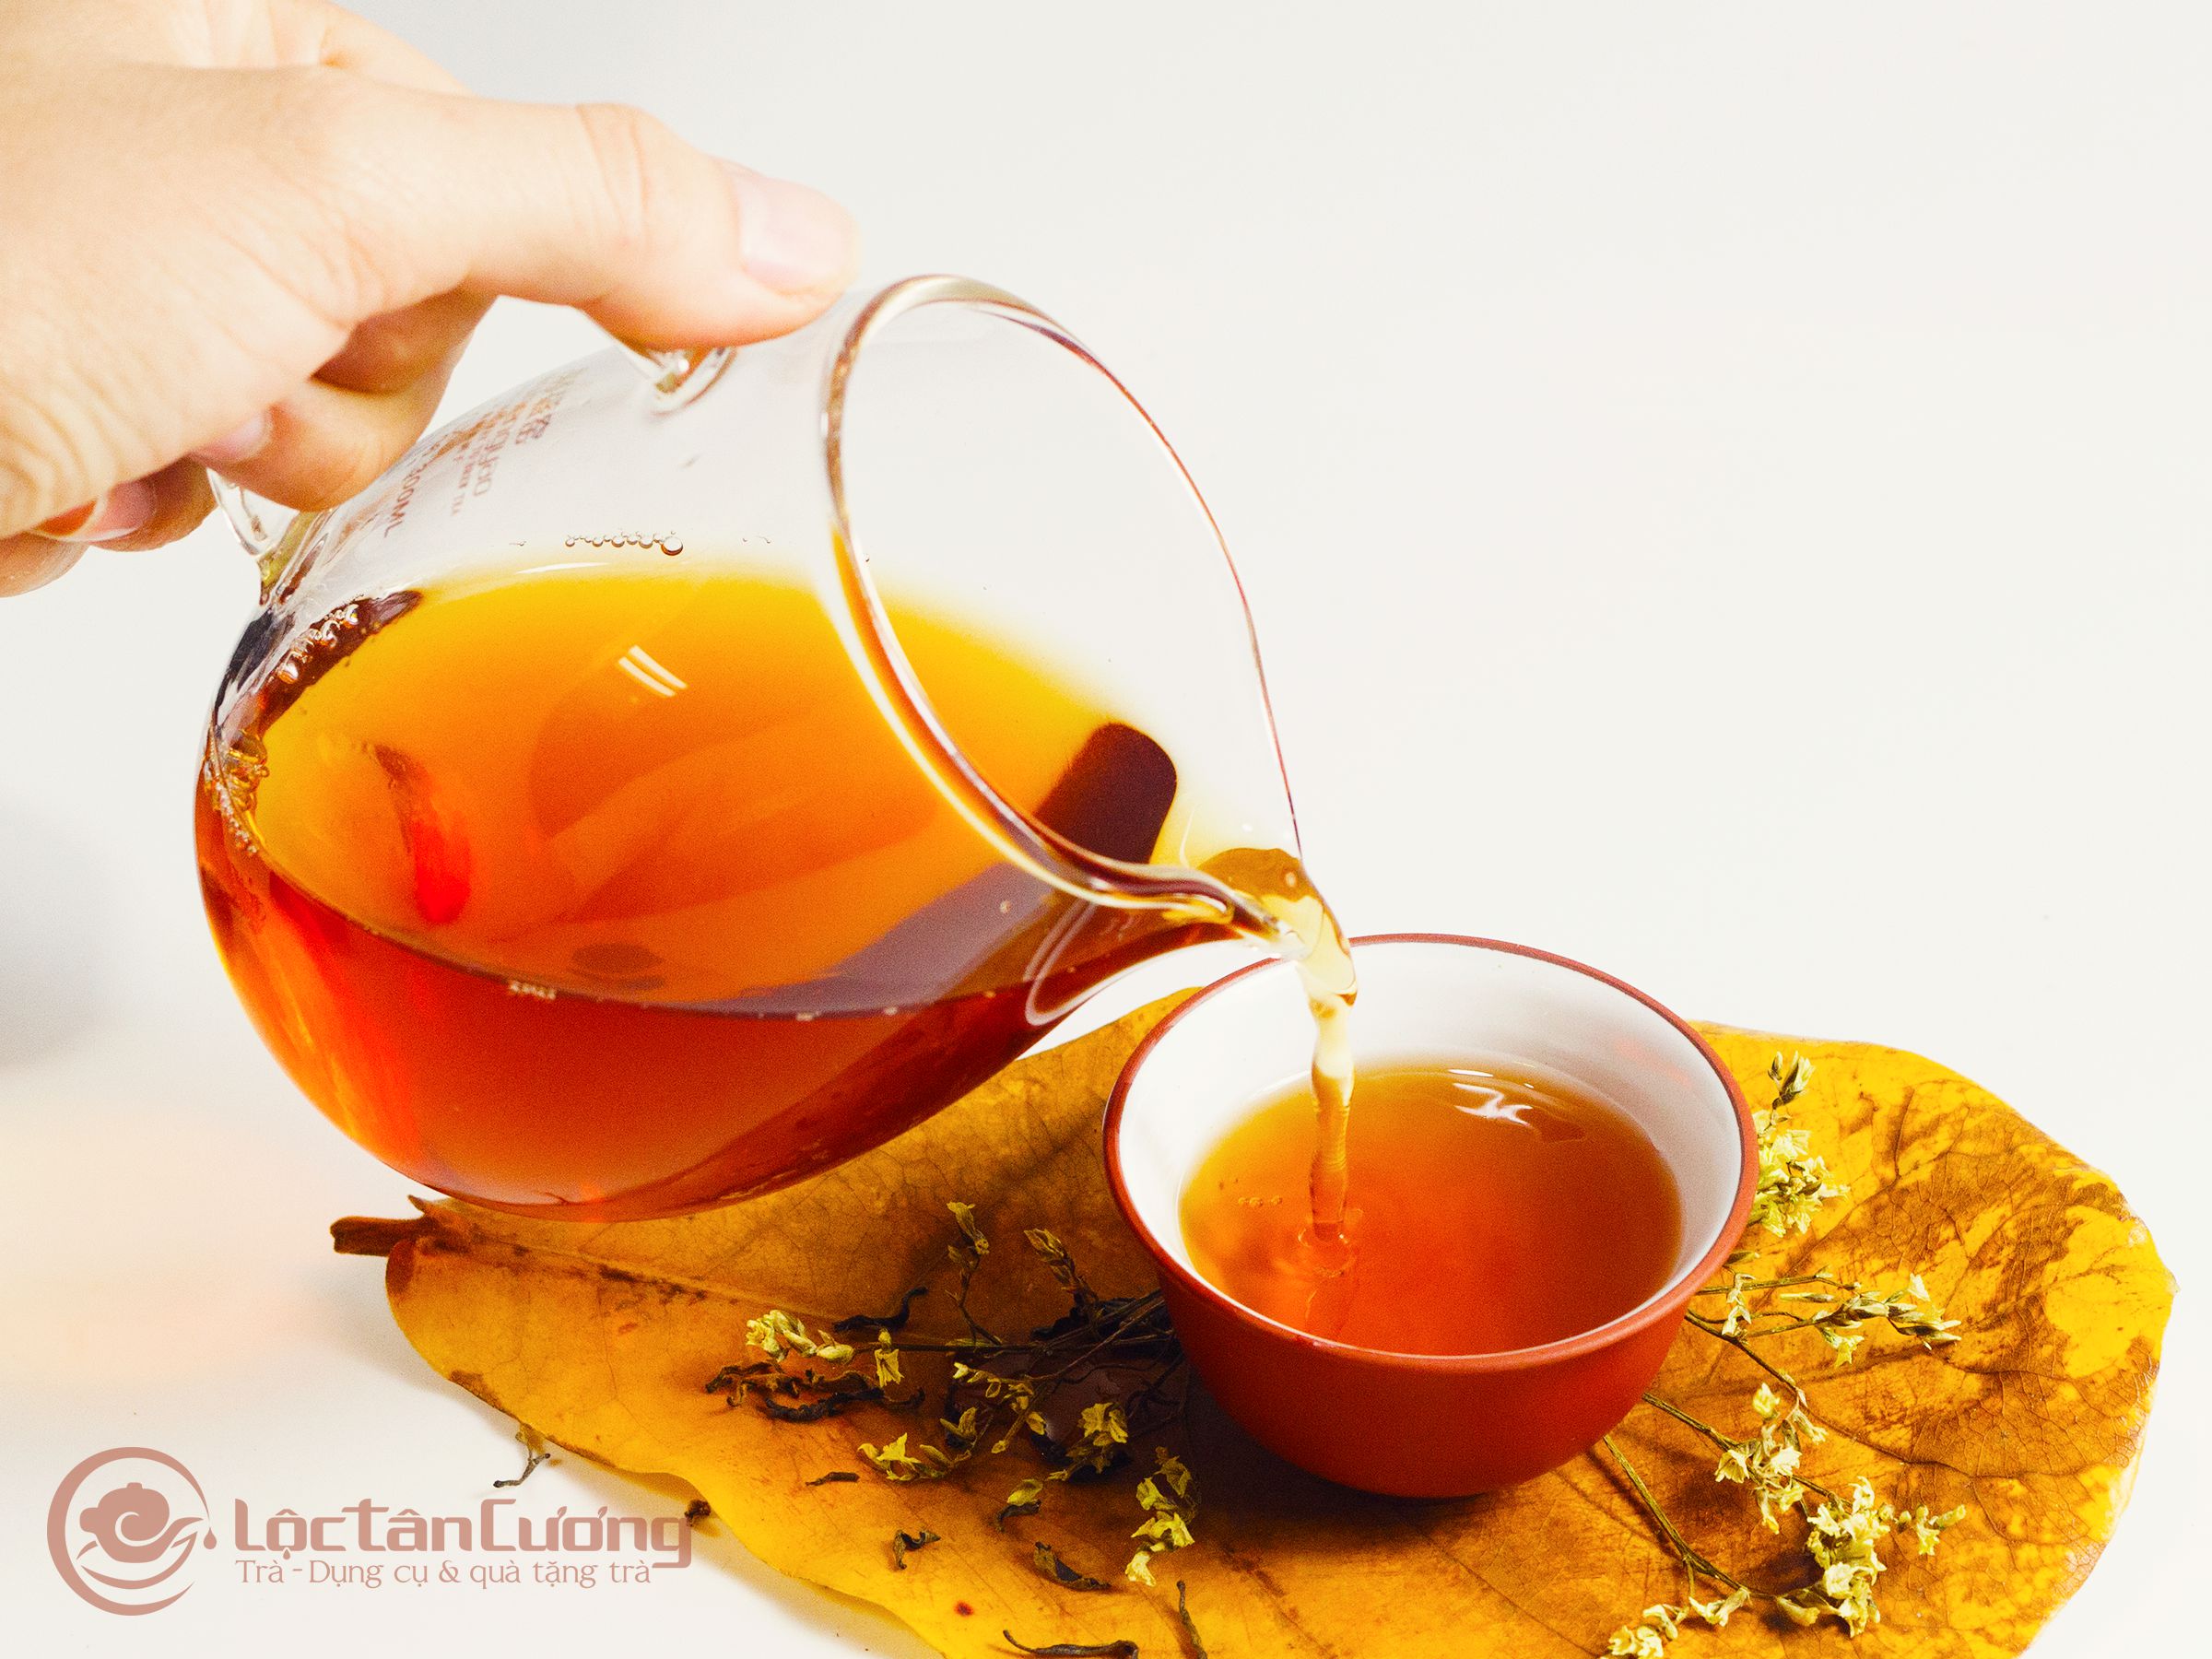 Uống trà shan tuyết rất tốt cho sức khỏe, đặc biệt là hỗ trợ làm giảm mỡ máu vô cùng hiệu quả